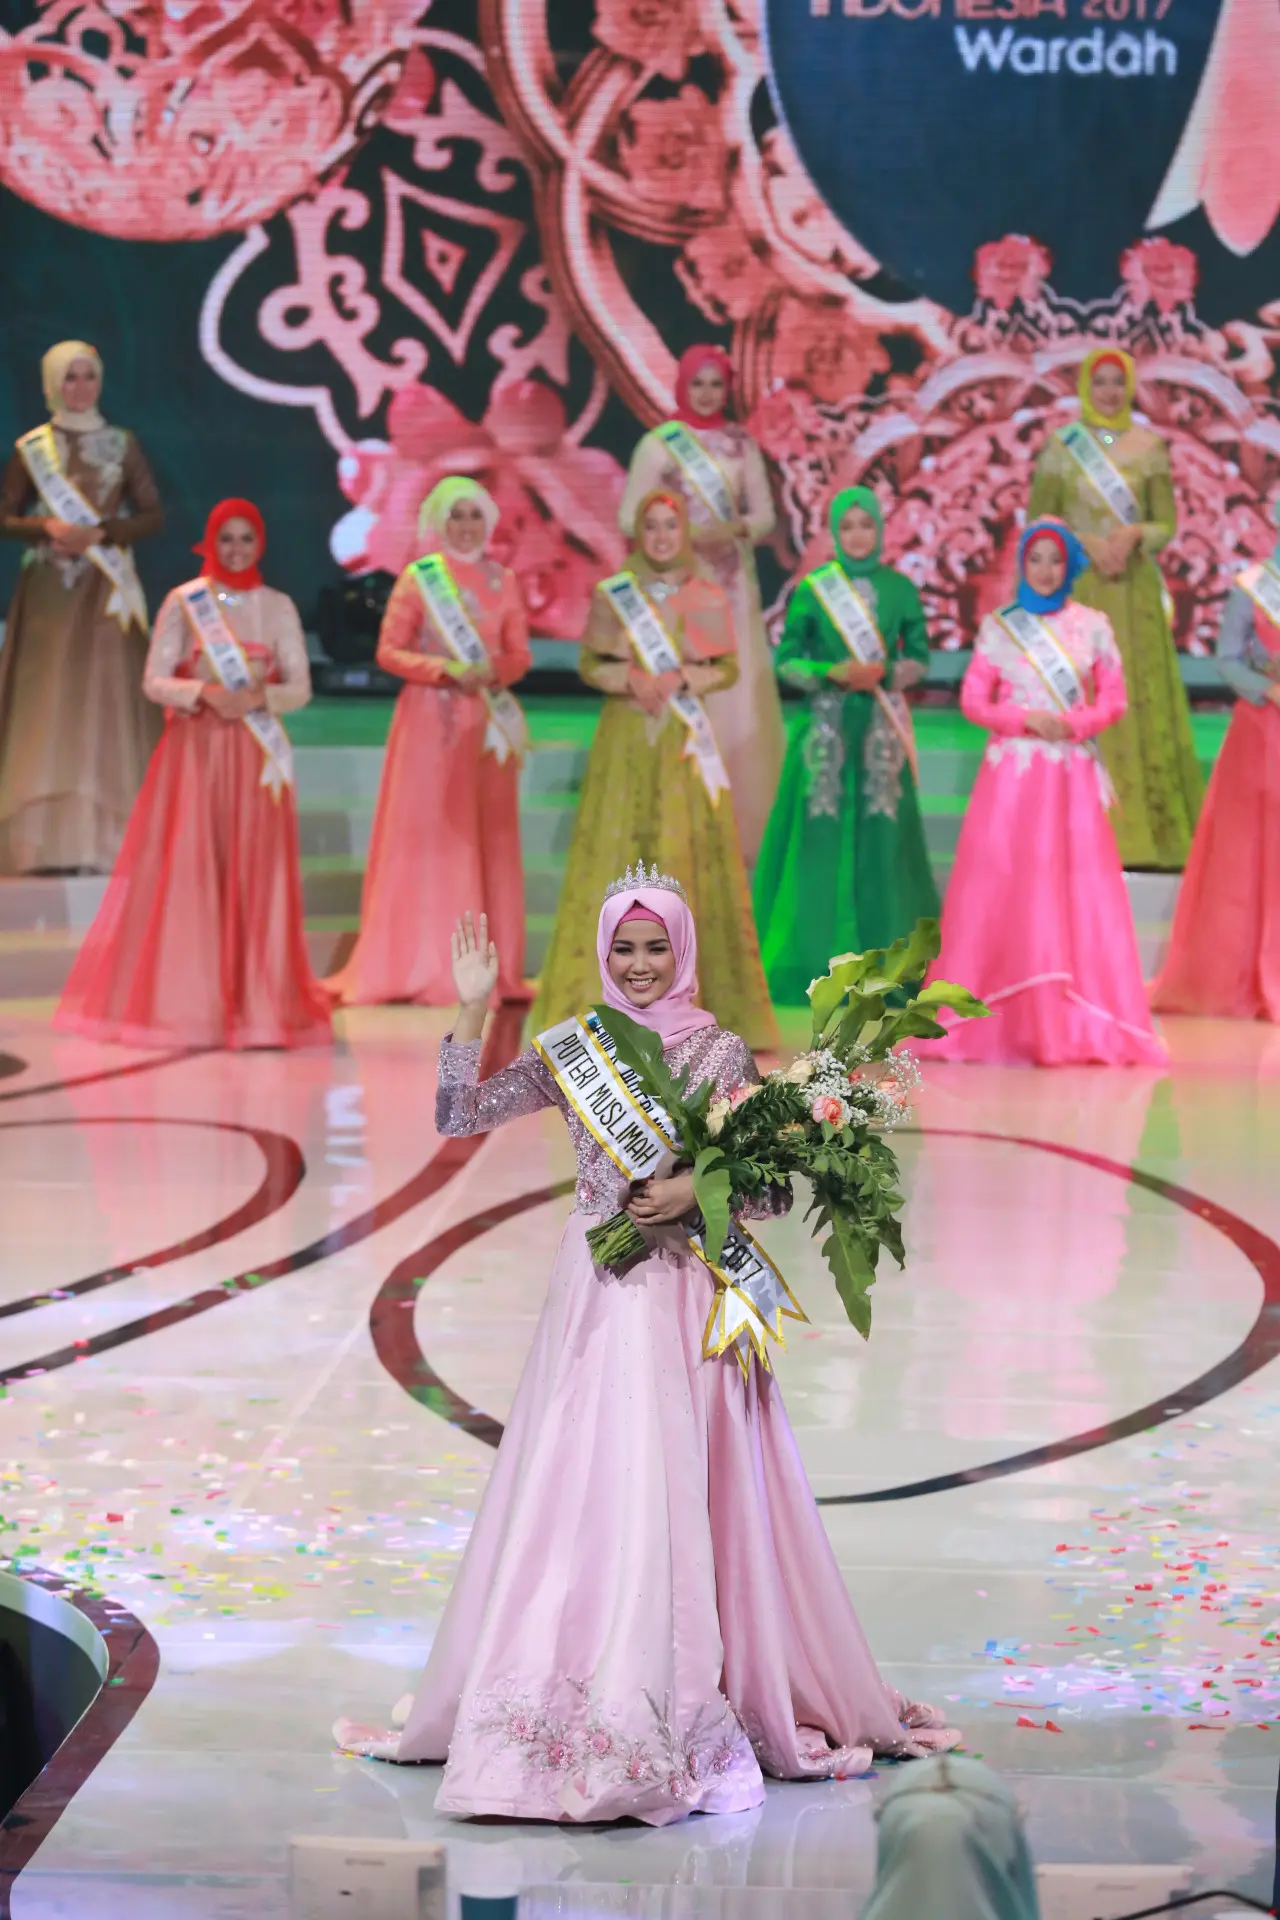 Syifa Fatimah saat dinobatkan sebagai Puteri Muslimah Indonesia 2017. (Adrian Putra/Bintang.com)